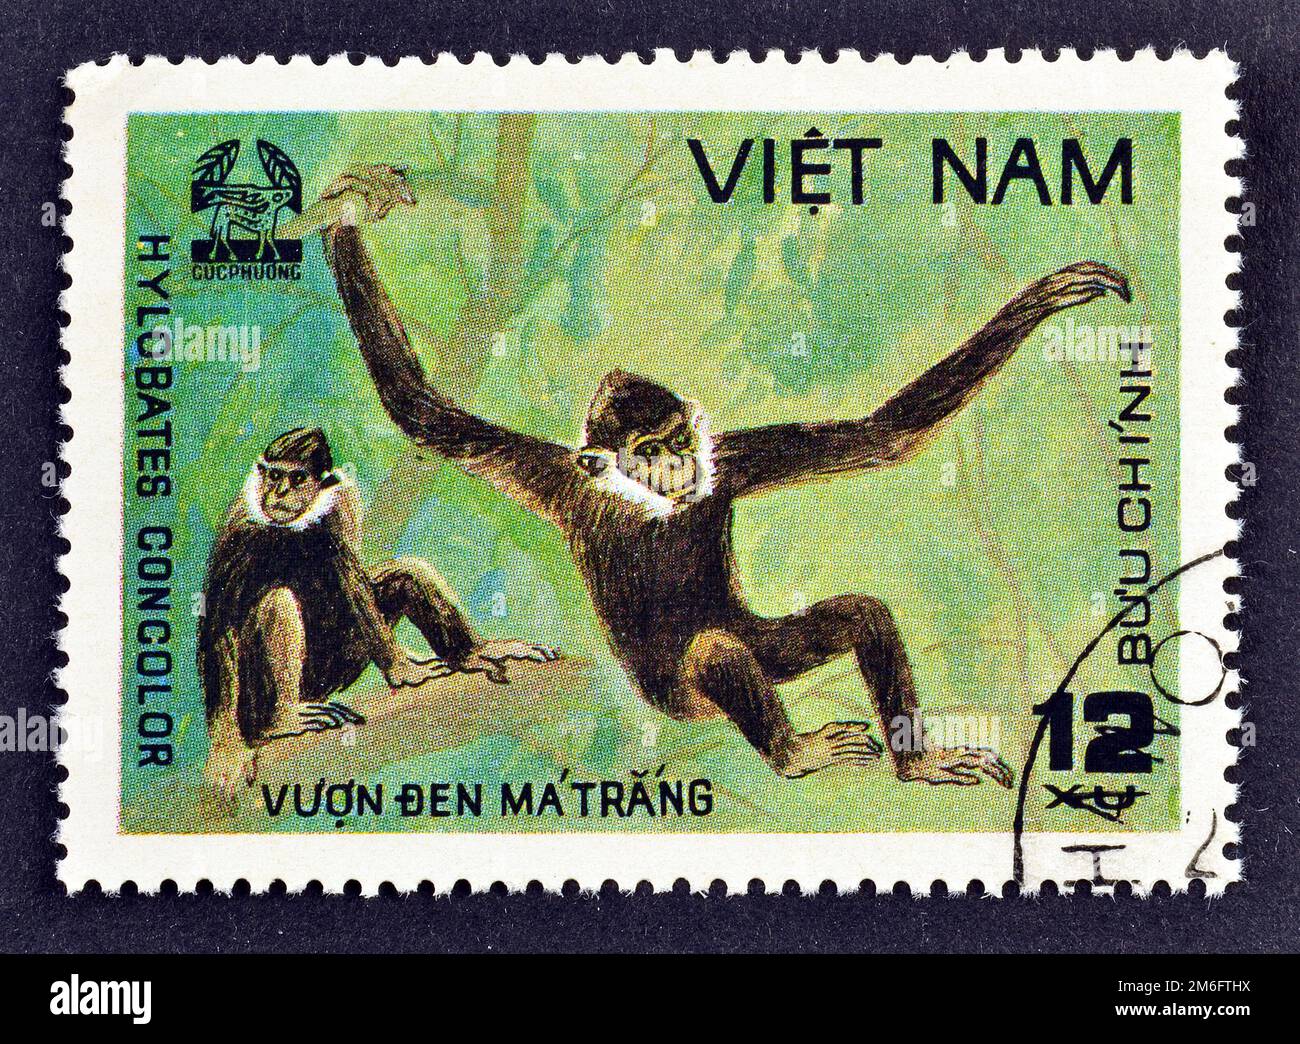 Timbre-poste annulé imprimé par le Vietnam, qui montre Black Crested Gibbon, concolor Nomascus, CUC Phuona Nati Forest, vers 1981. Banque D'Images